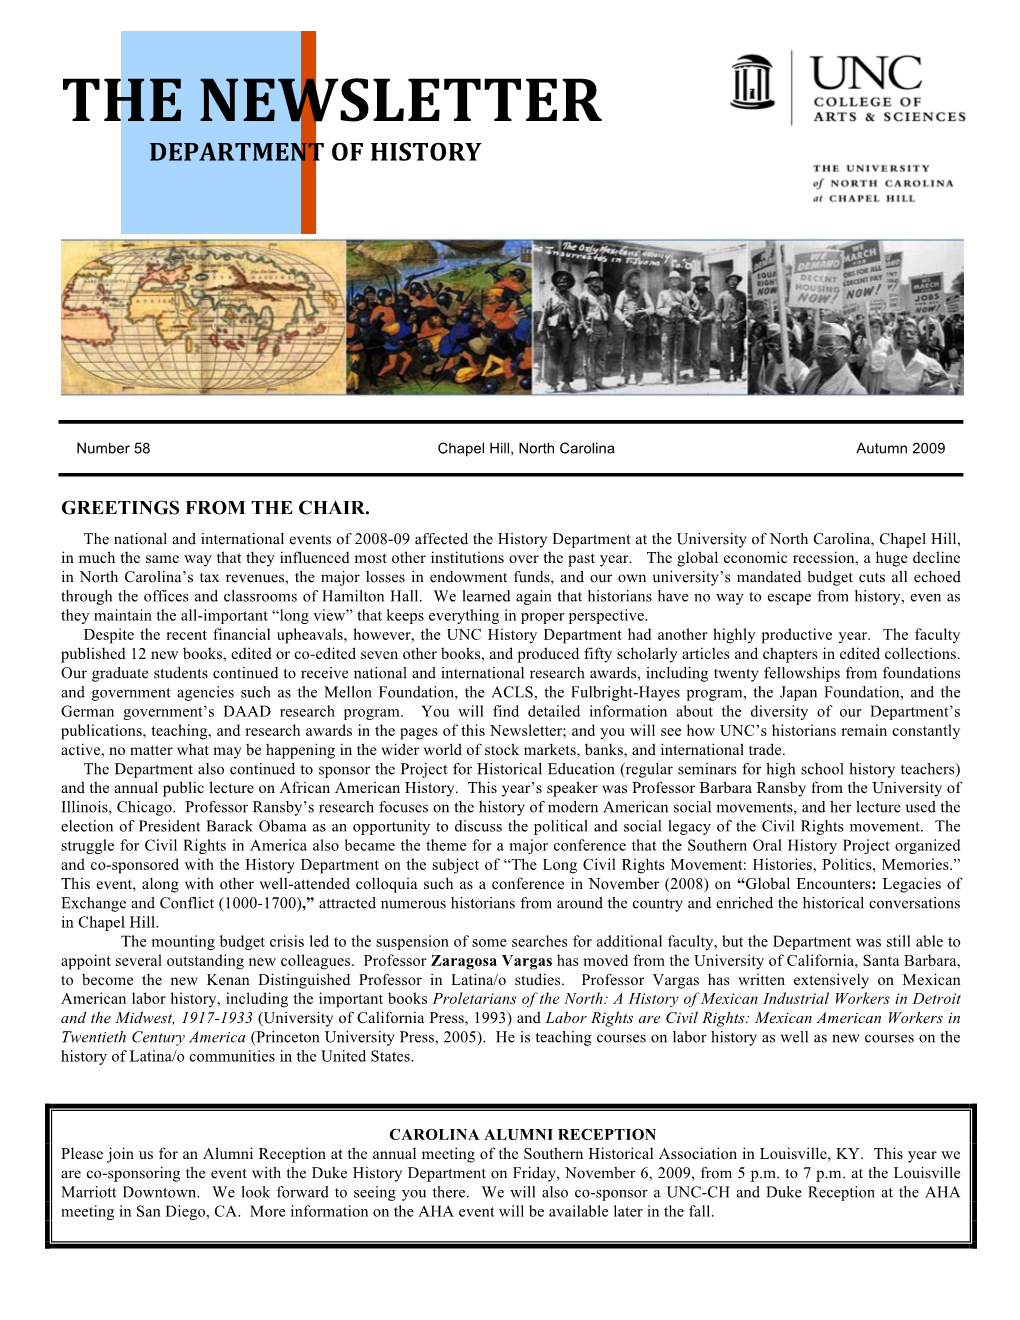 44618 History Newsletter 2009